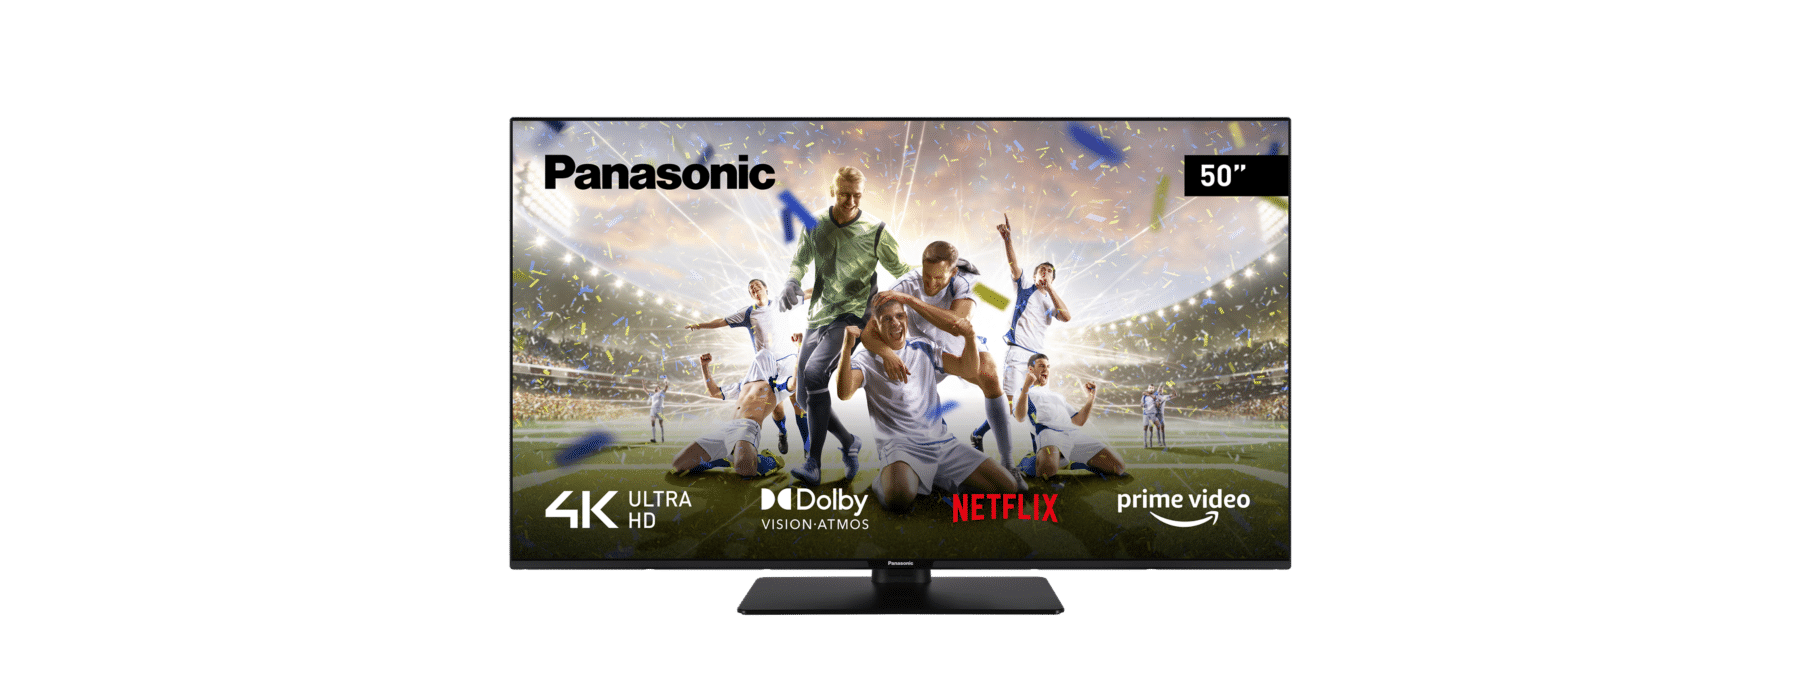 Panasonic Tv Led 4K